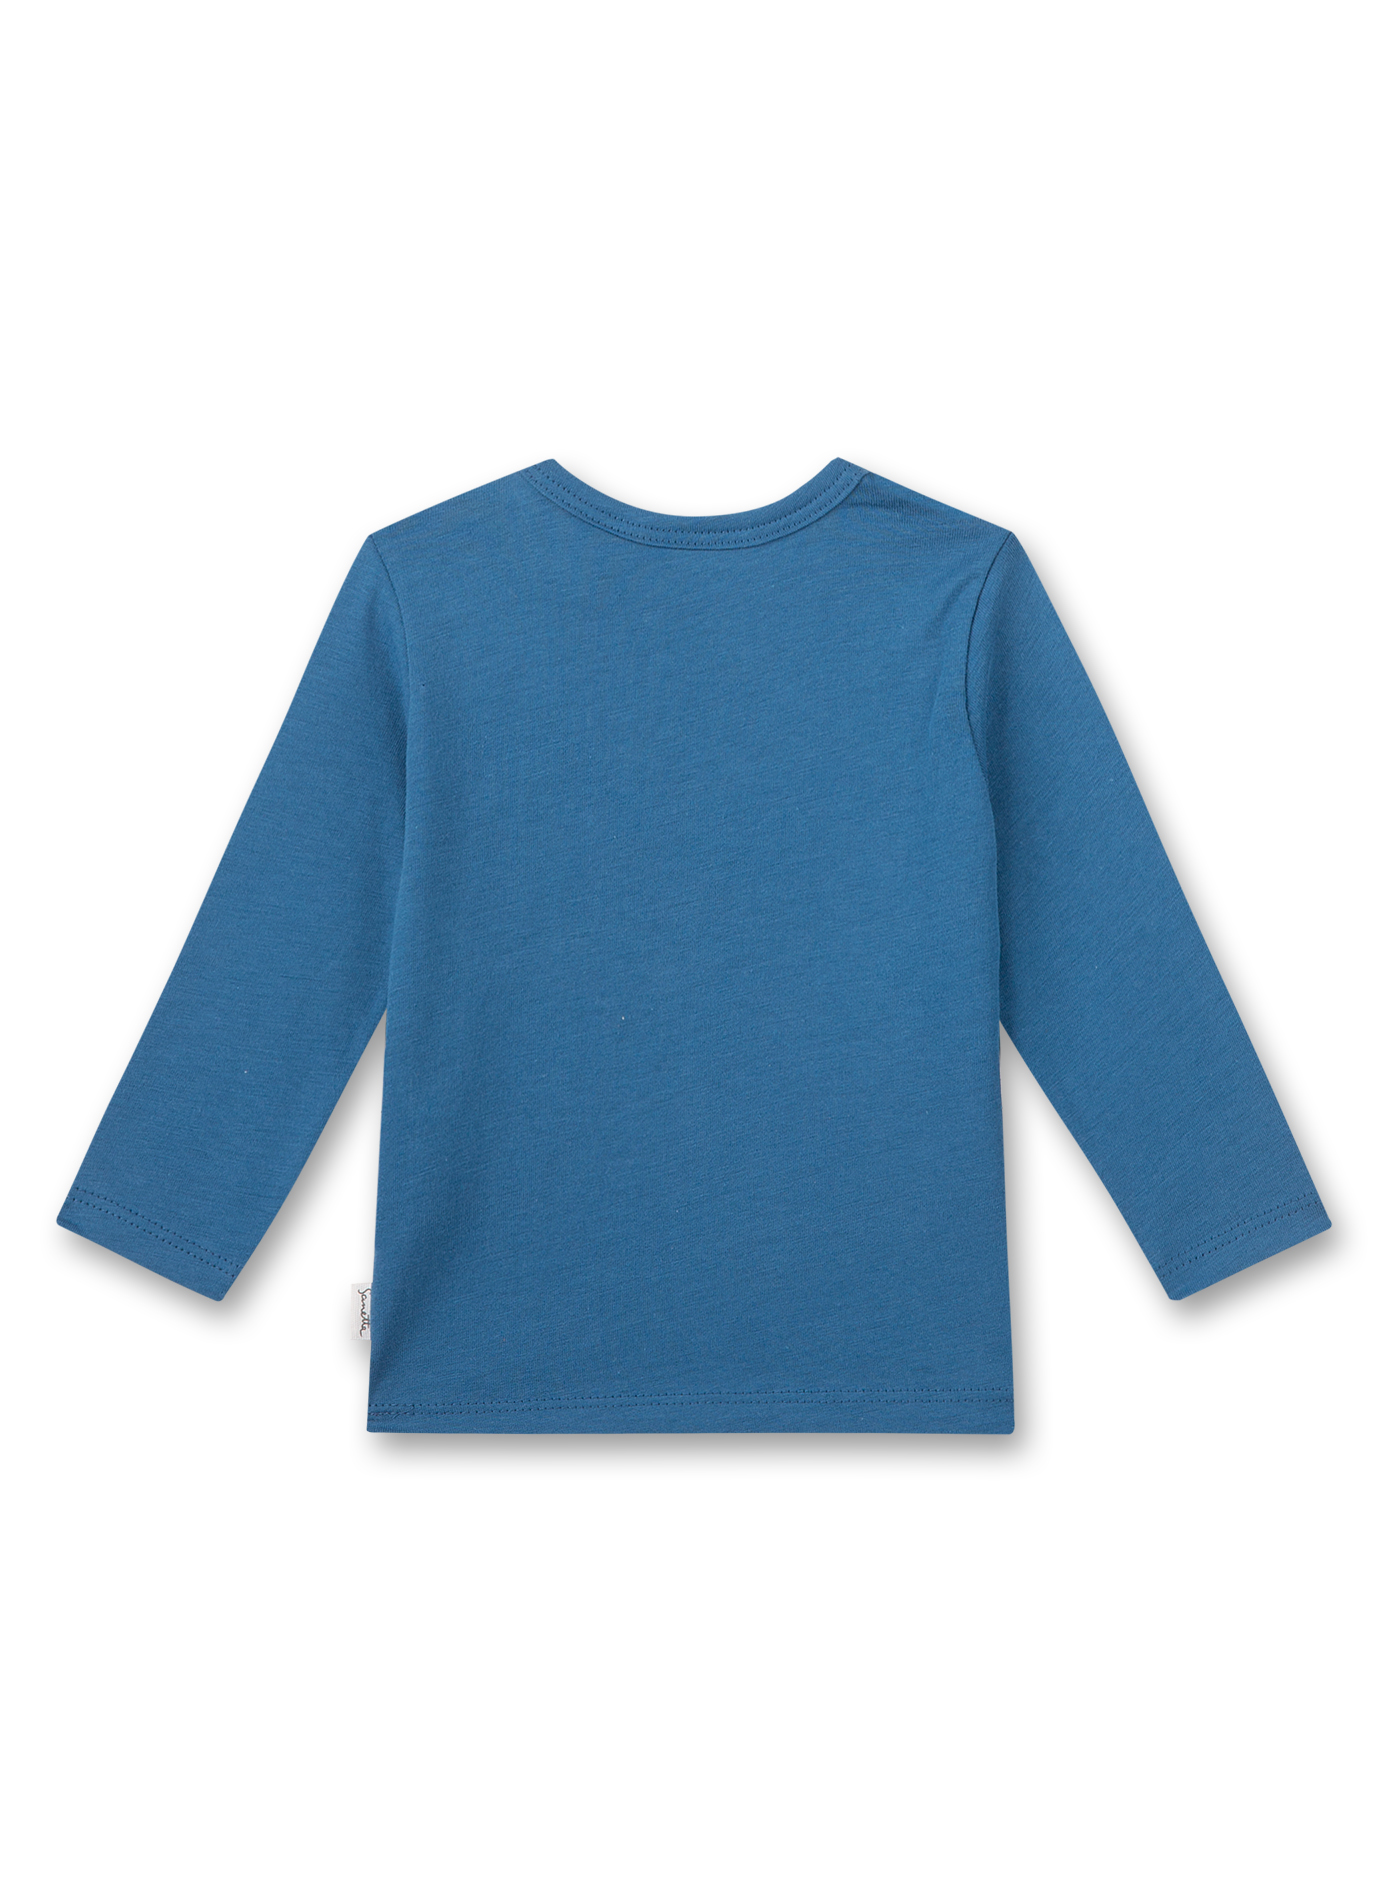 Jungen-Shirt langarm Blau